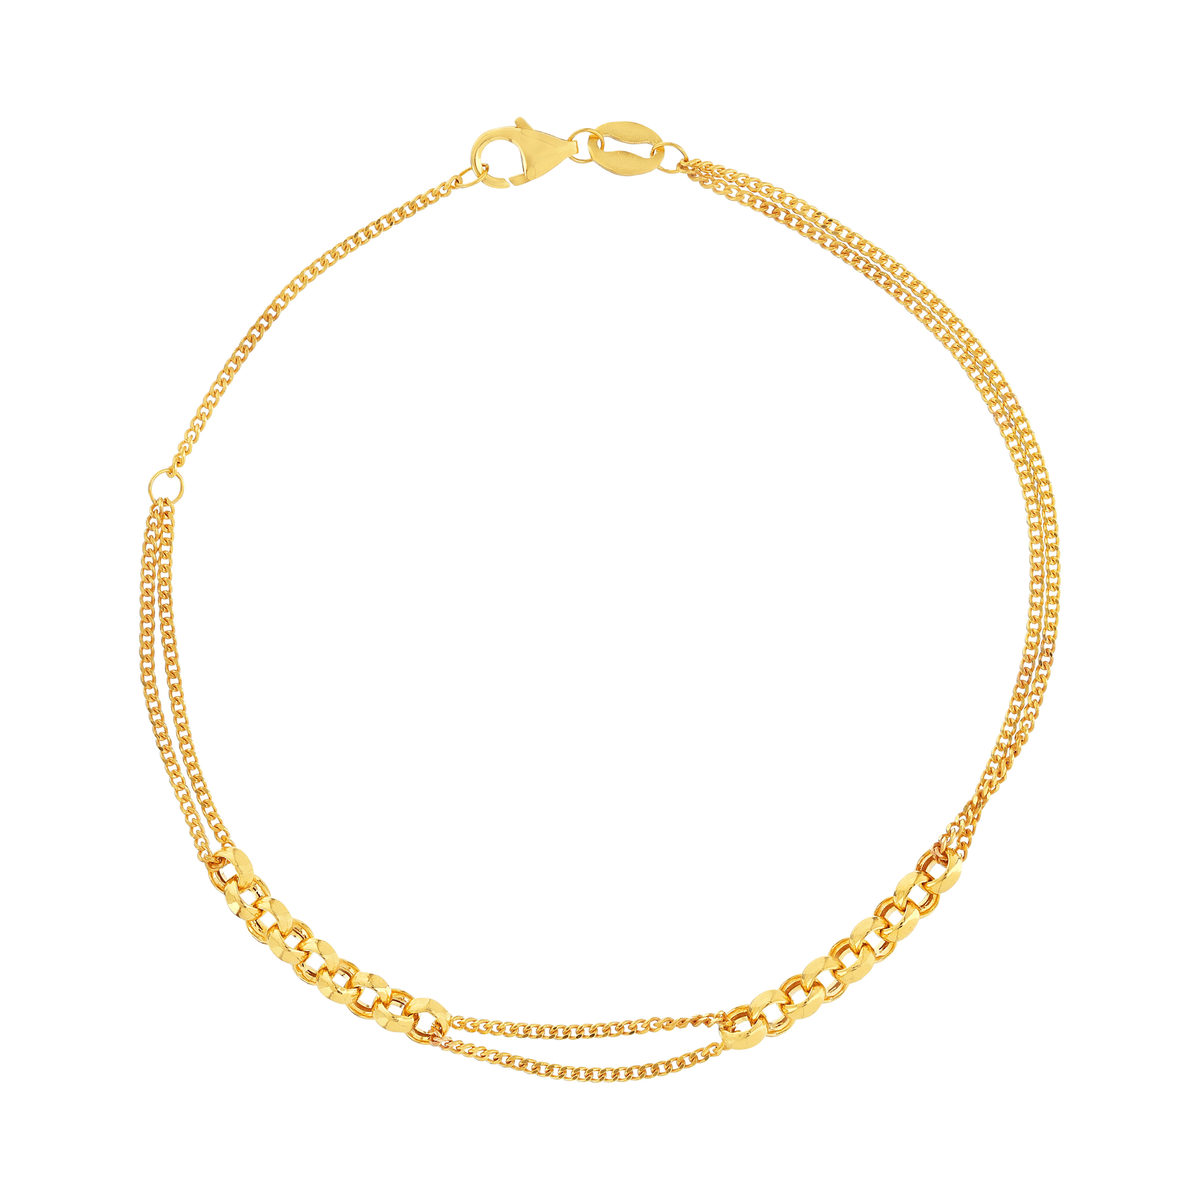 Bracelet or jaune 375 double chaîne motif maille jaseron 19 cm